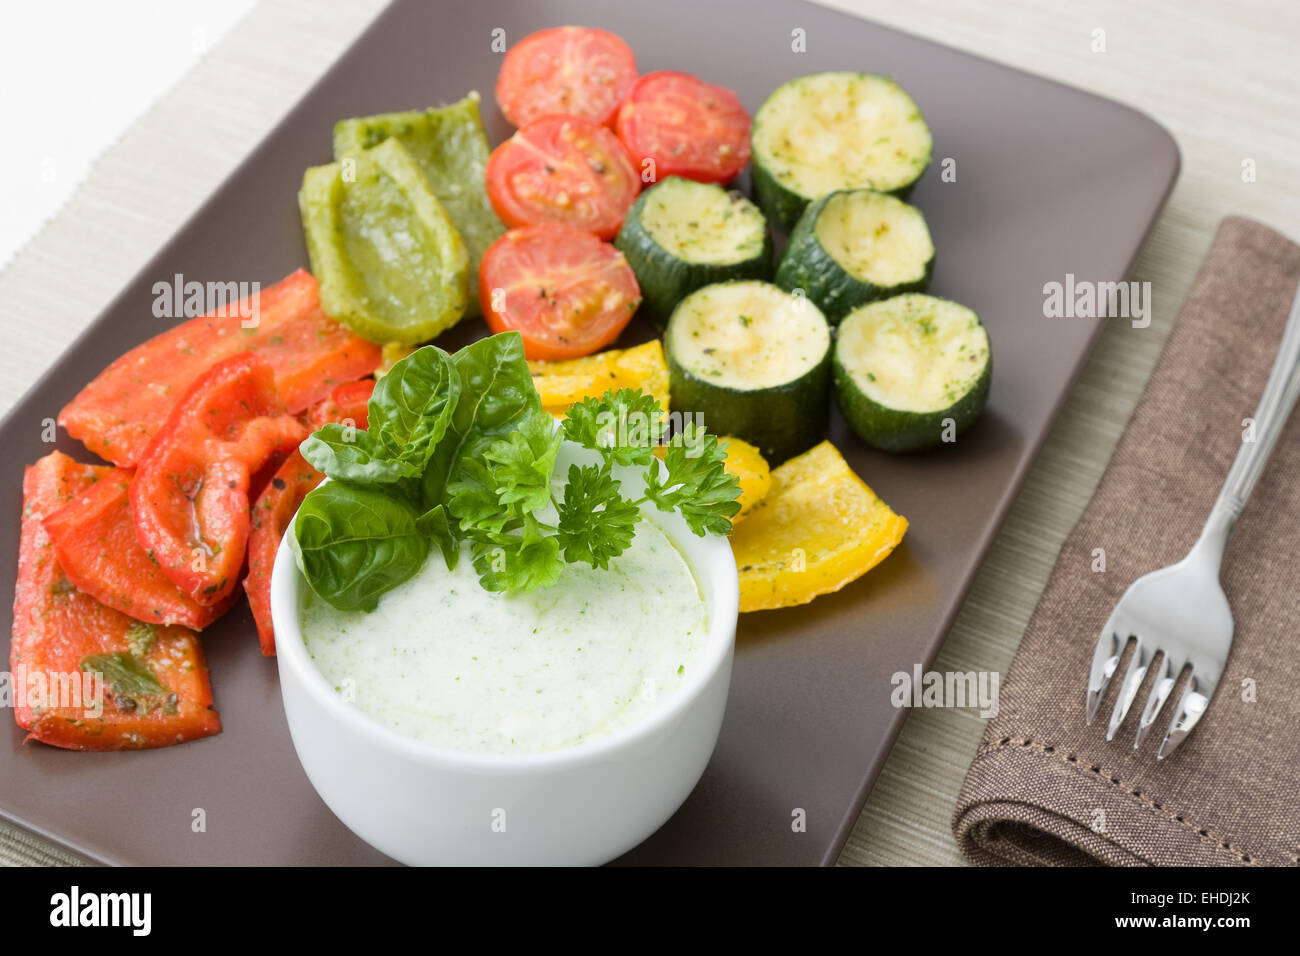 Gegrilletes Gemüse - légumes grillés Banque D'Images